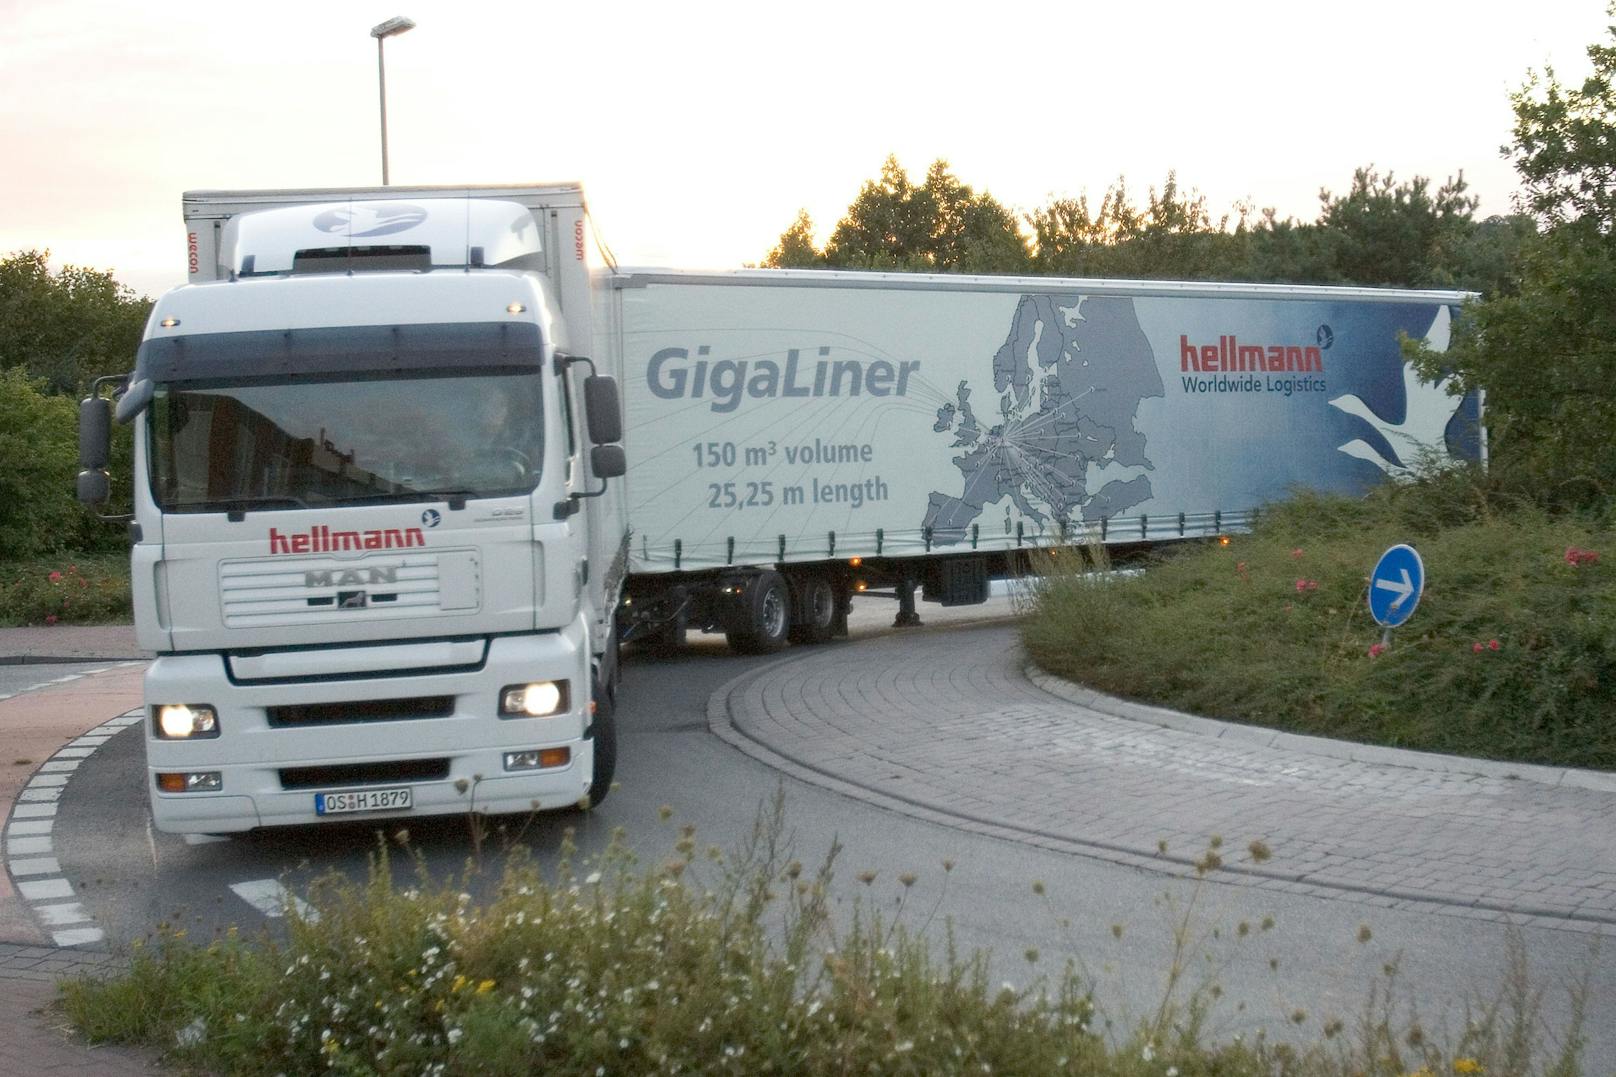 Gigaliner: Fahren bald Monster-Trucks auf?